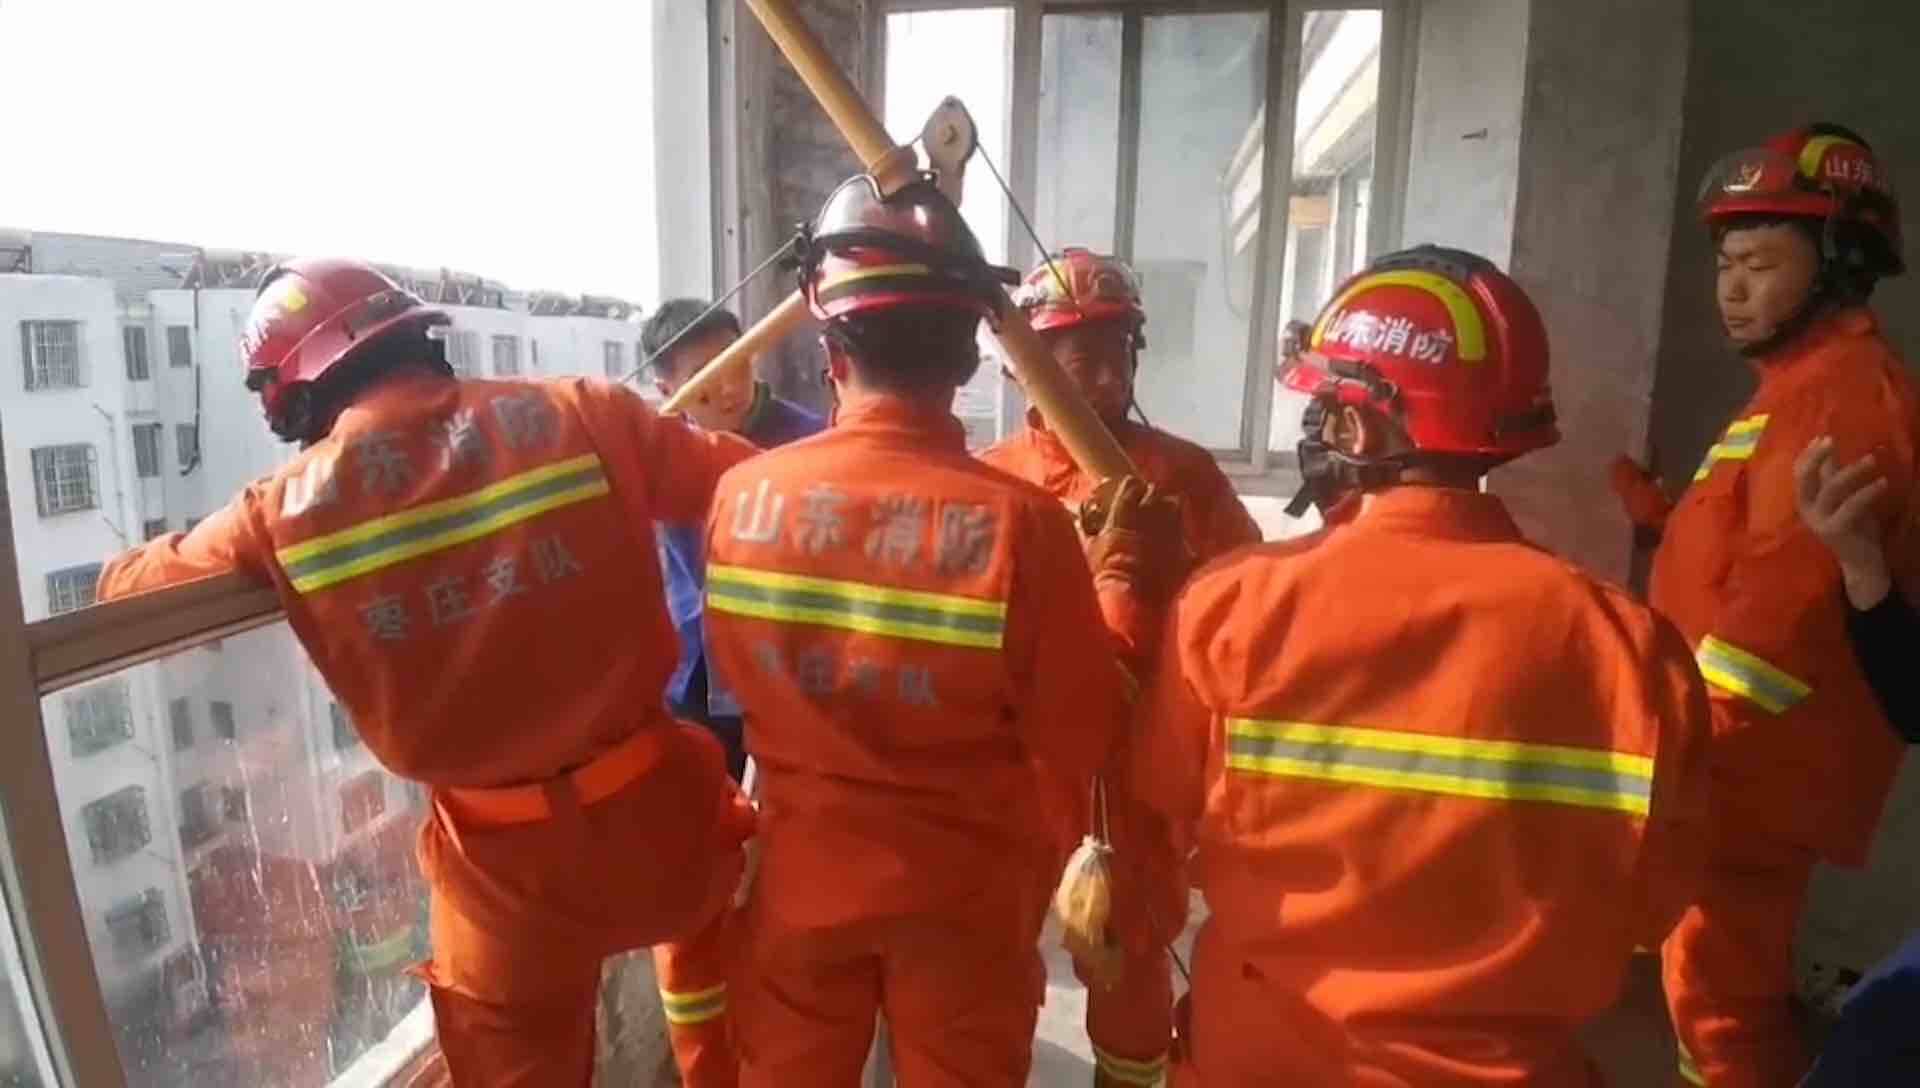 吊机侧滑把工人压在6楼阳台  5名消防员破窗救人